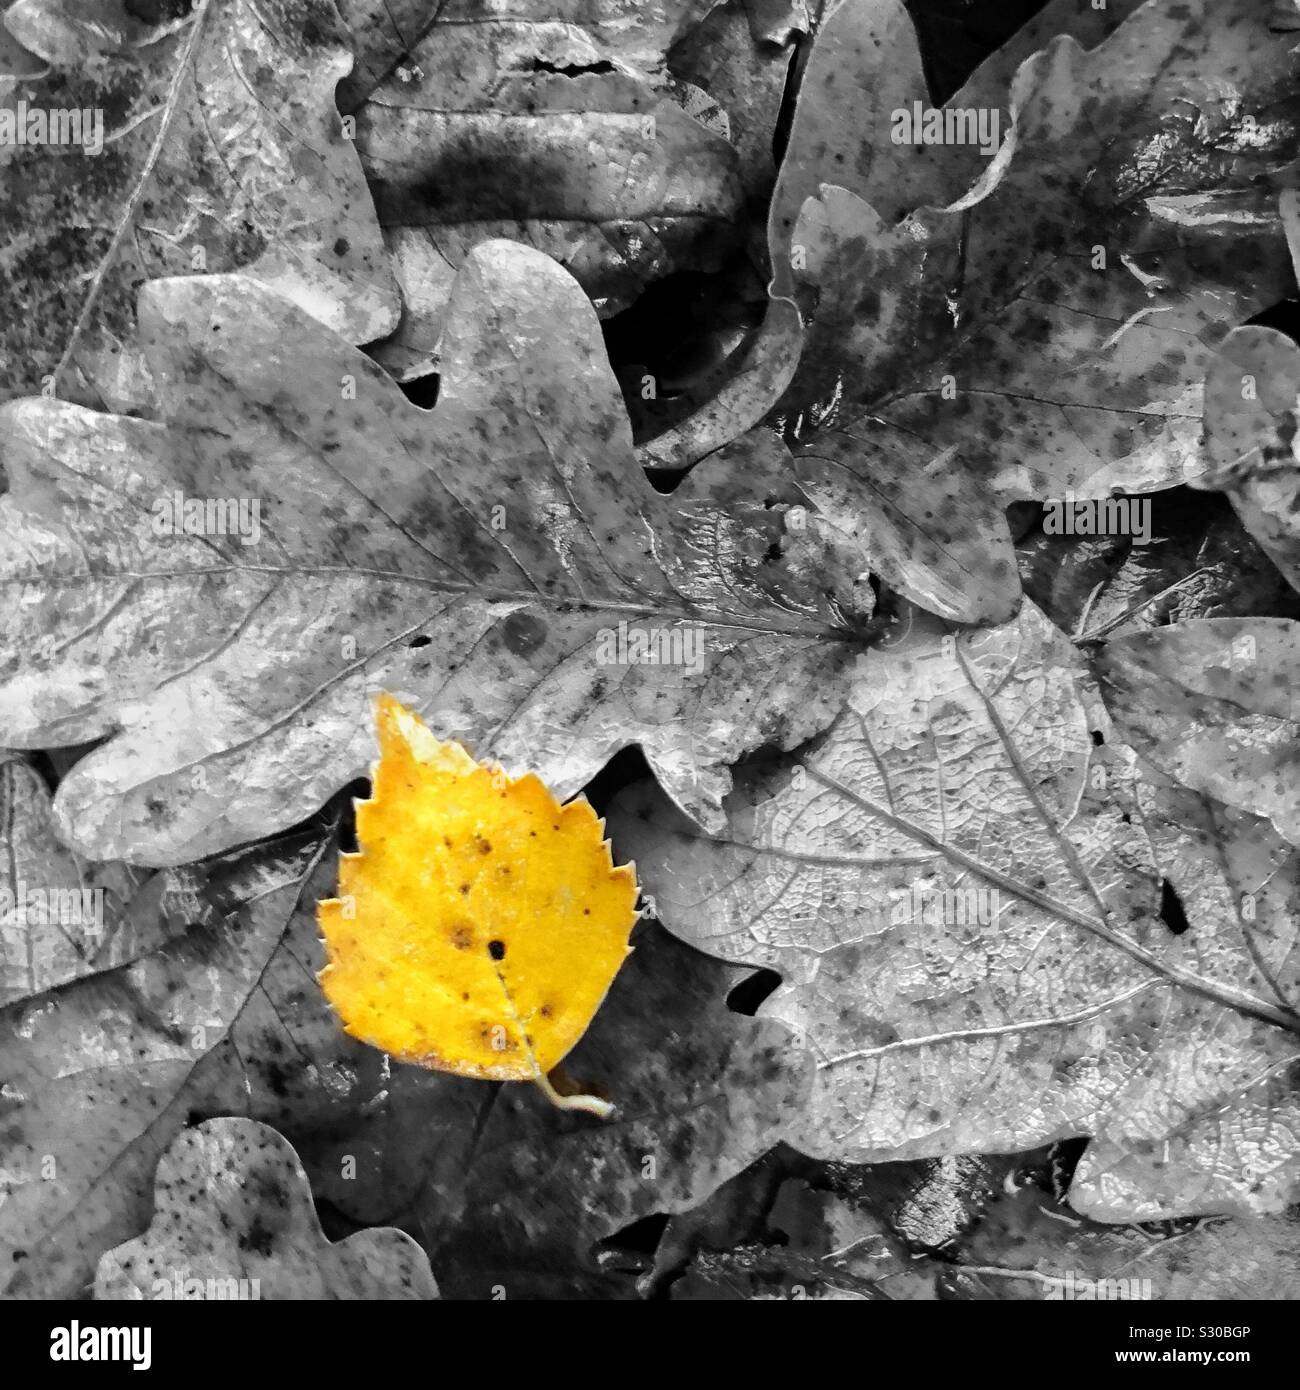 Libre d'humide, l'automne les feuilles mortes sur le terrain en noir et blanc avec une petite feuille jaune se faire remarquer. Banque D'Images